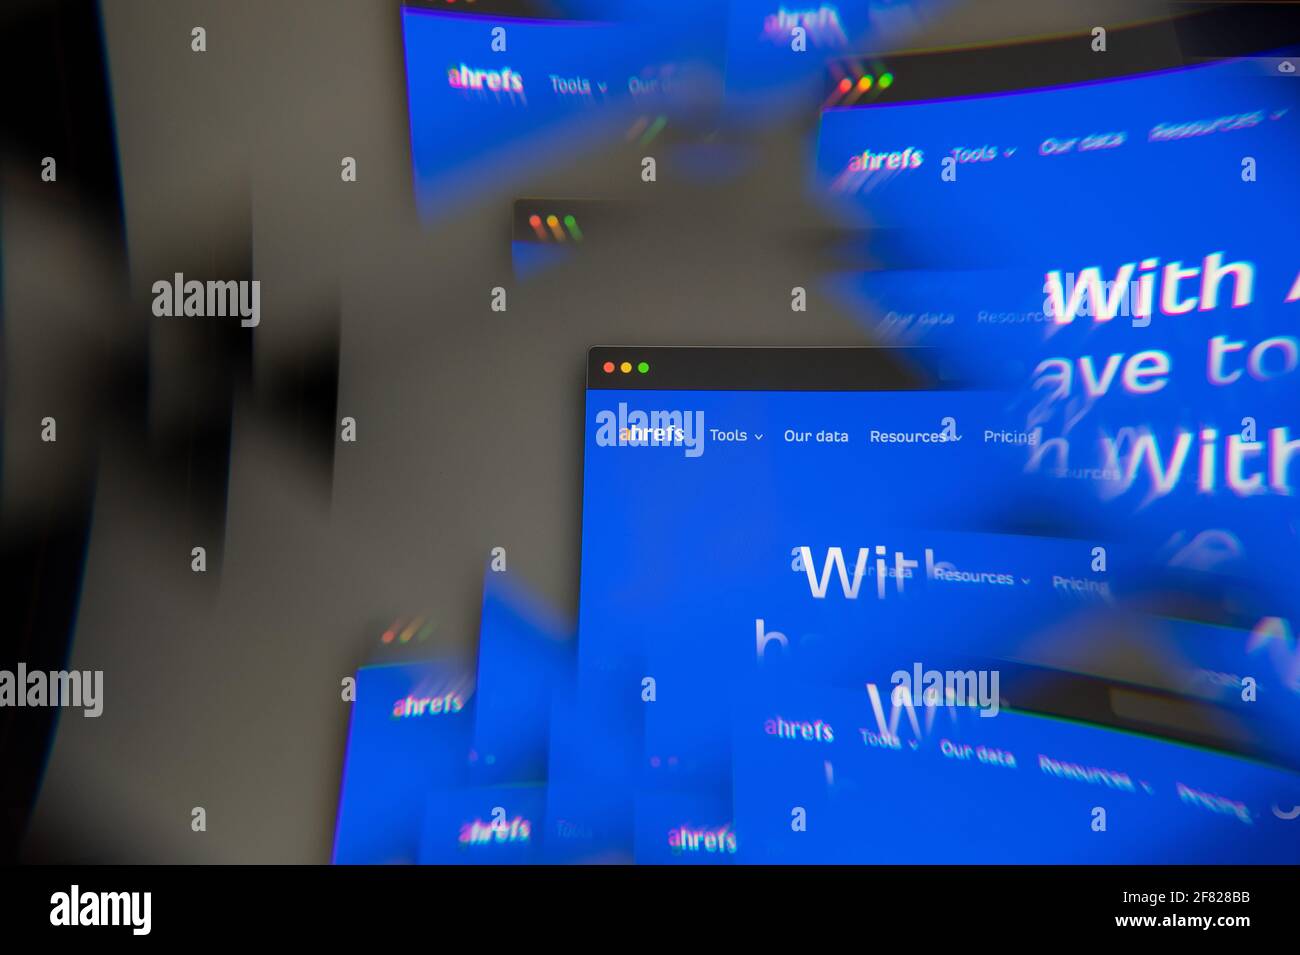 Milano, Italia - 10 APRILE 2021: Il logo Ahrefs sullo schermo del laptop visto attraverso un prisma ottico, interpretazione creativa. Immagine dinamica e unica di Ahre Foto Stock